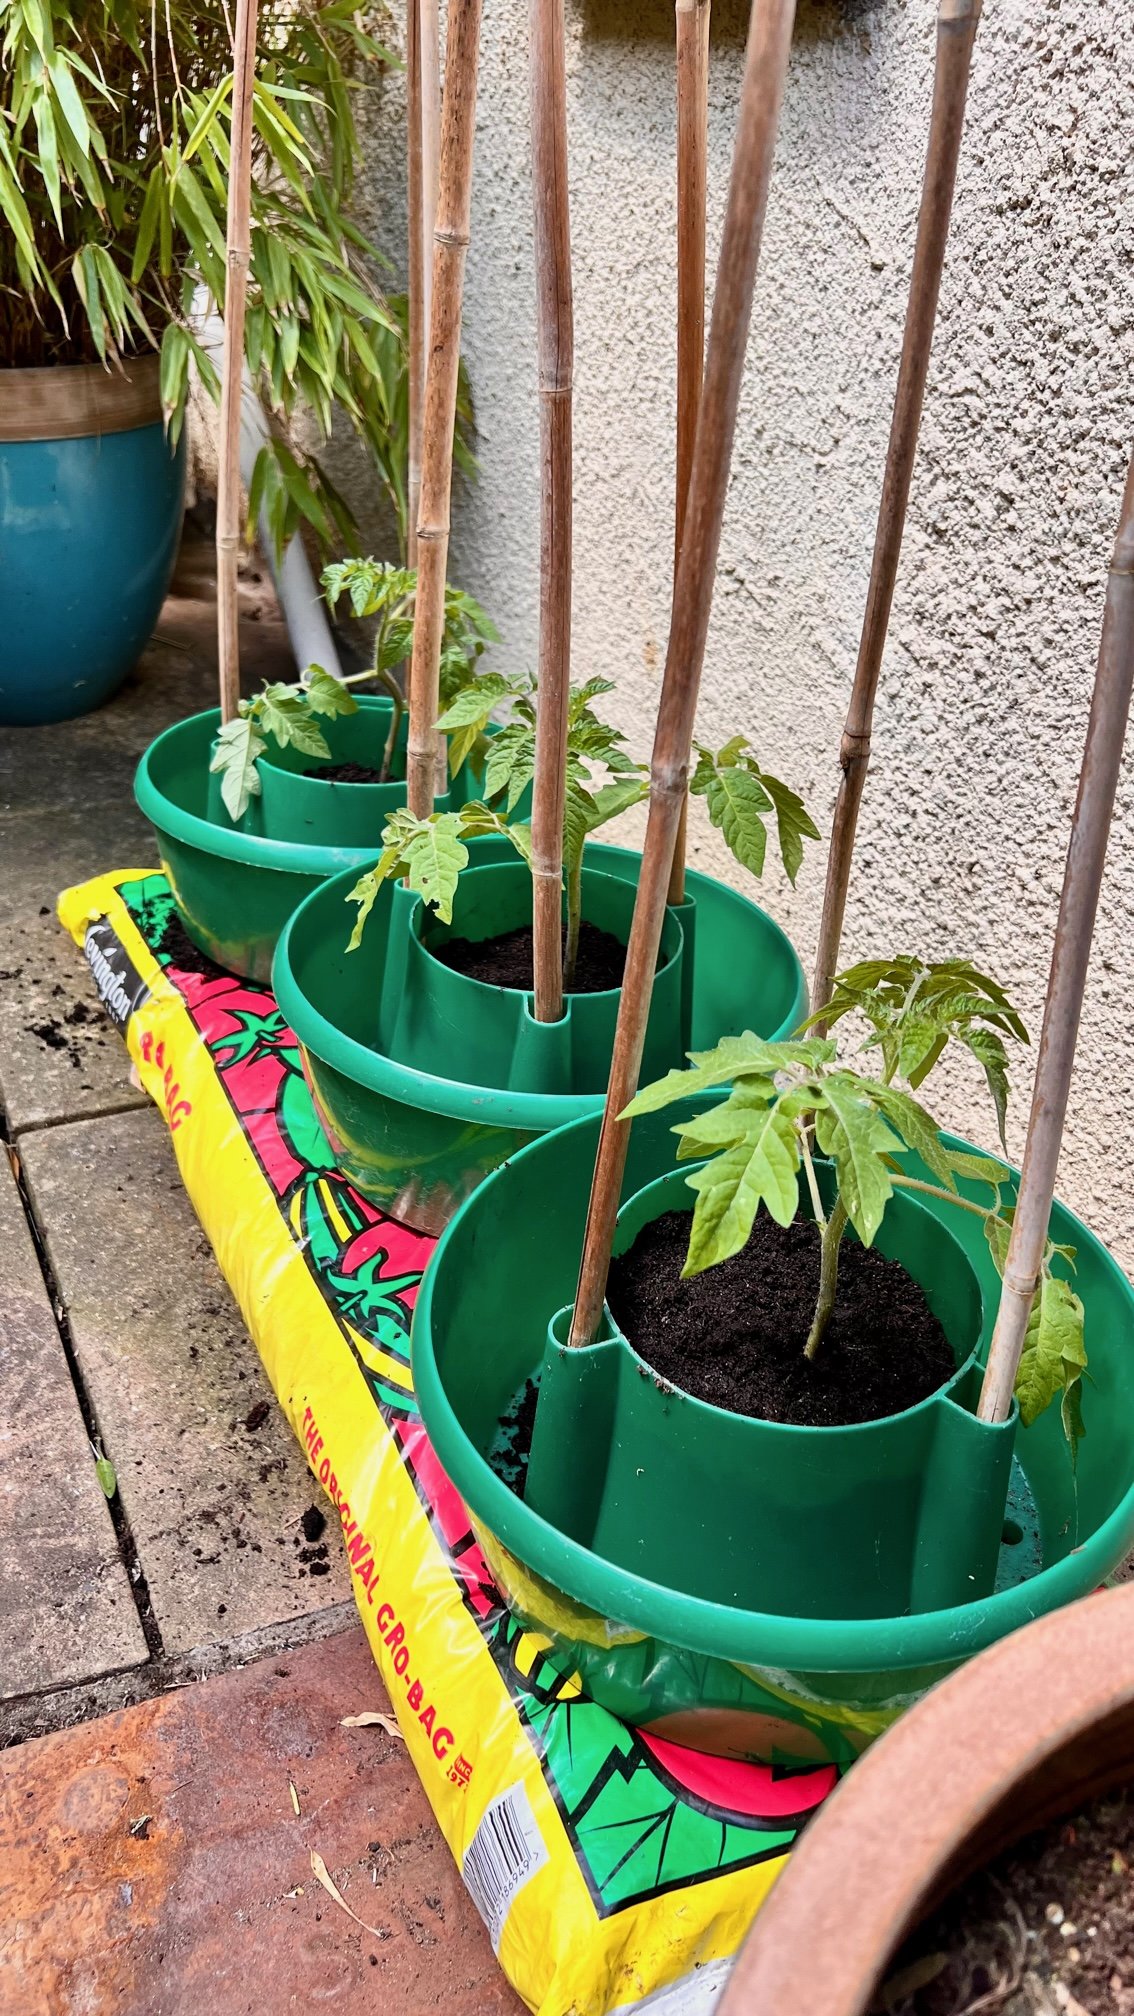 Growing tomatoes in a grow bag - Mud & Bloom